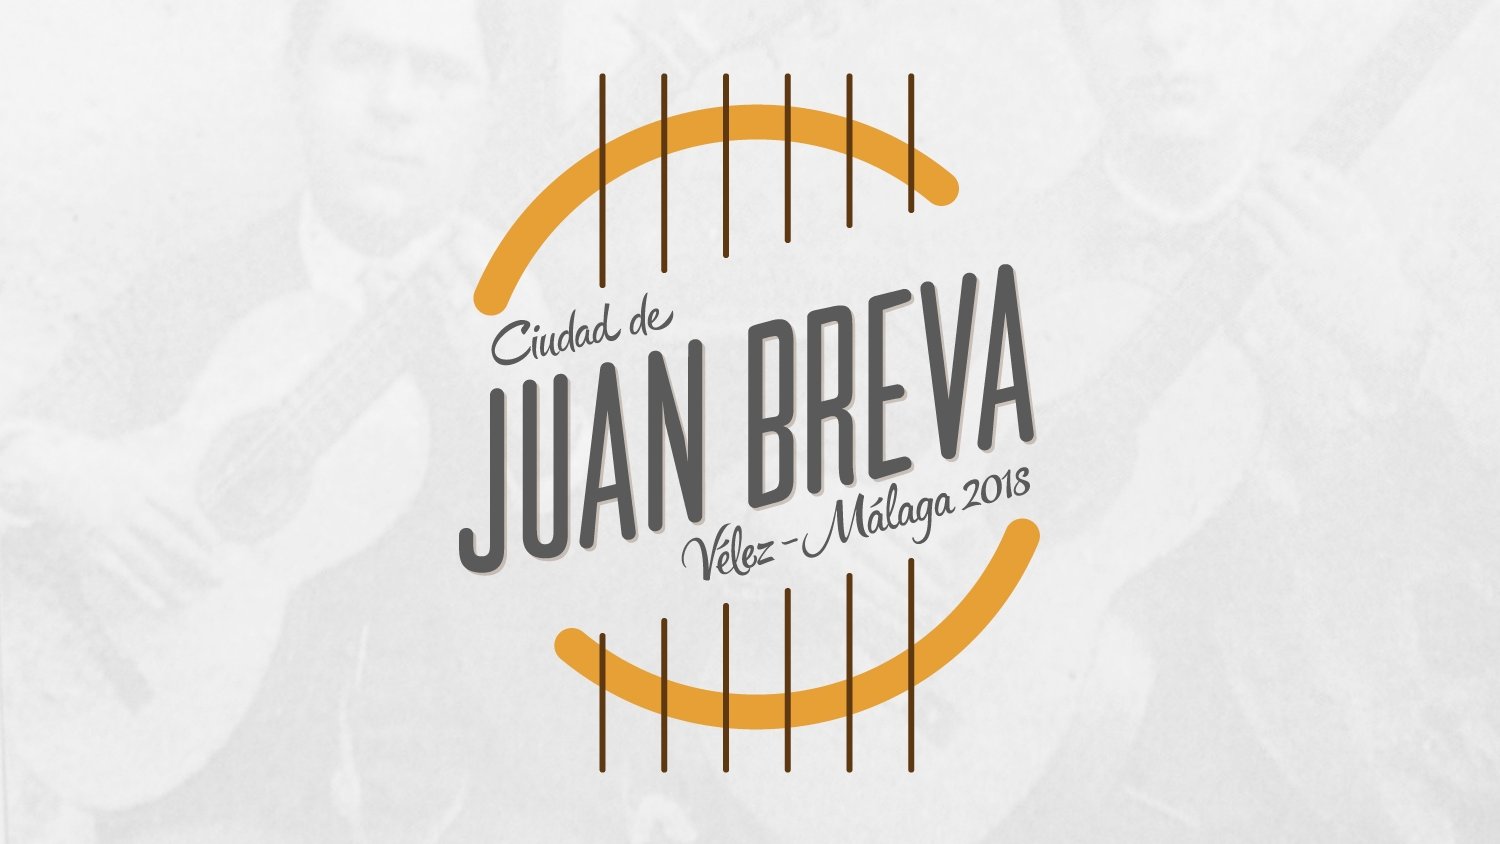 Vélez-Málaga conmemorará el año Juan Breva con motivo del centenario del fallecimiento del cantaor veleño